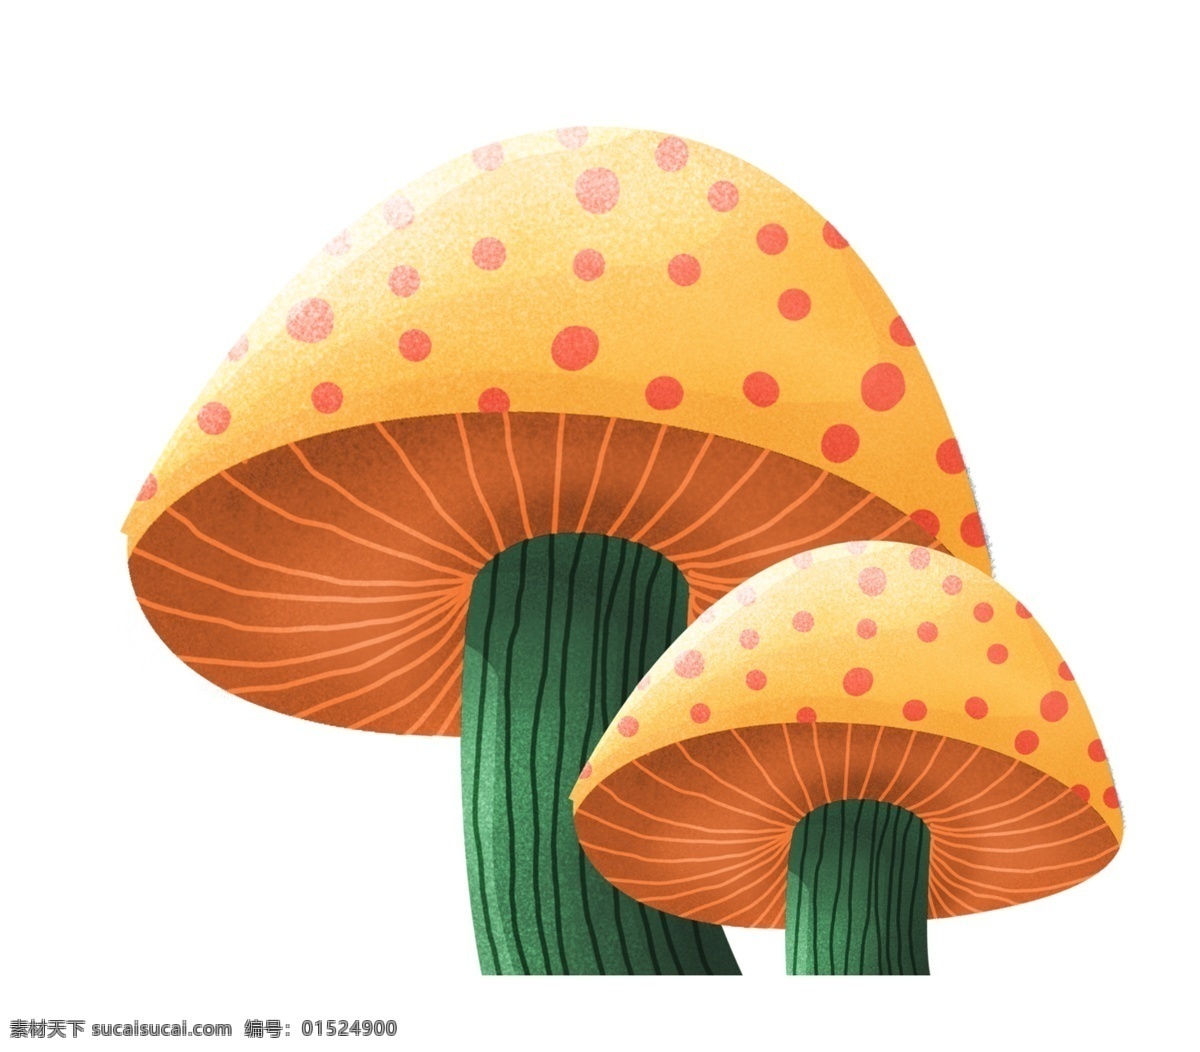 两个蘑菇 蘑菇 菌类 食品